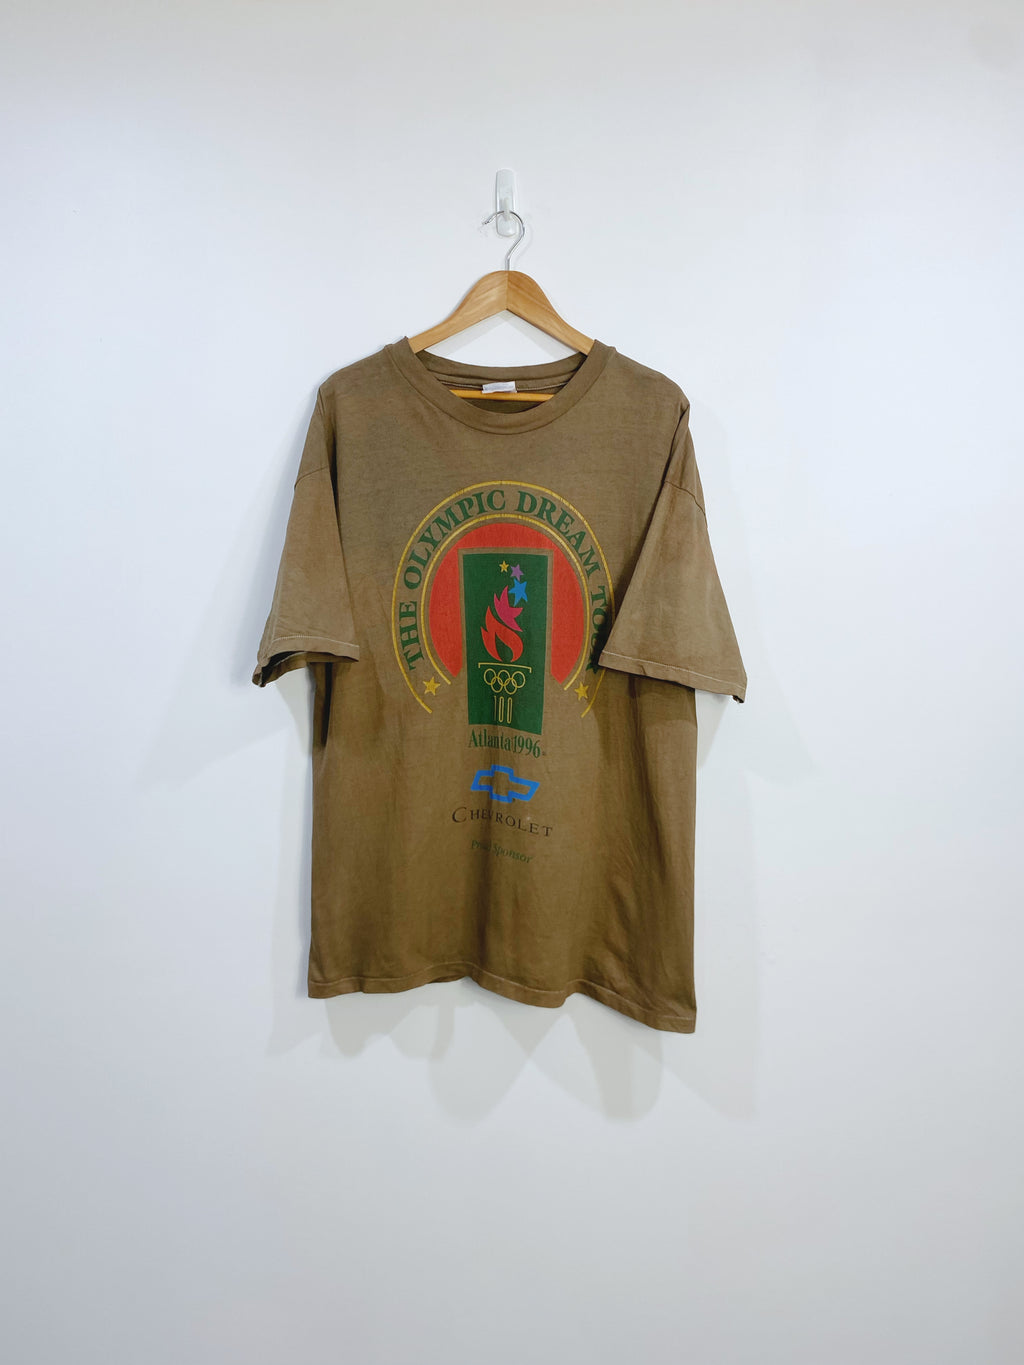 Vintage 1996 Atlanta Olympics T-shirt XL